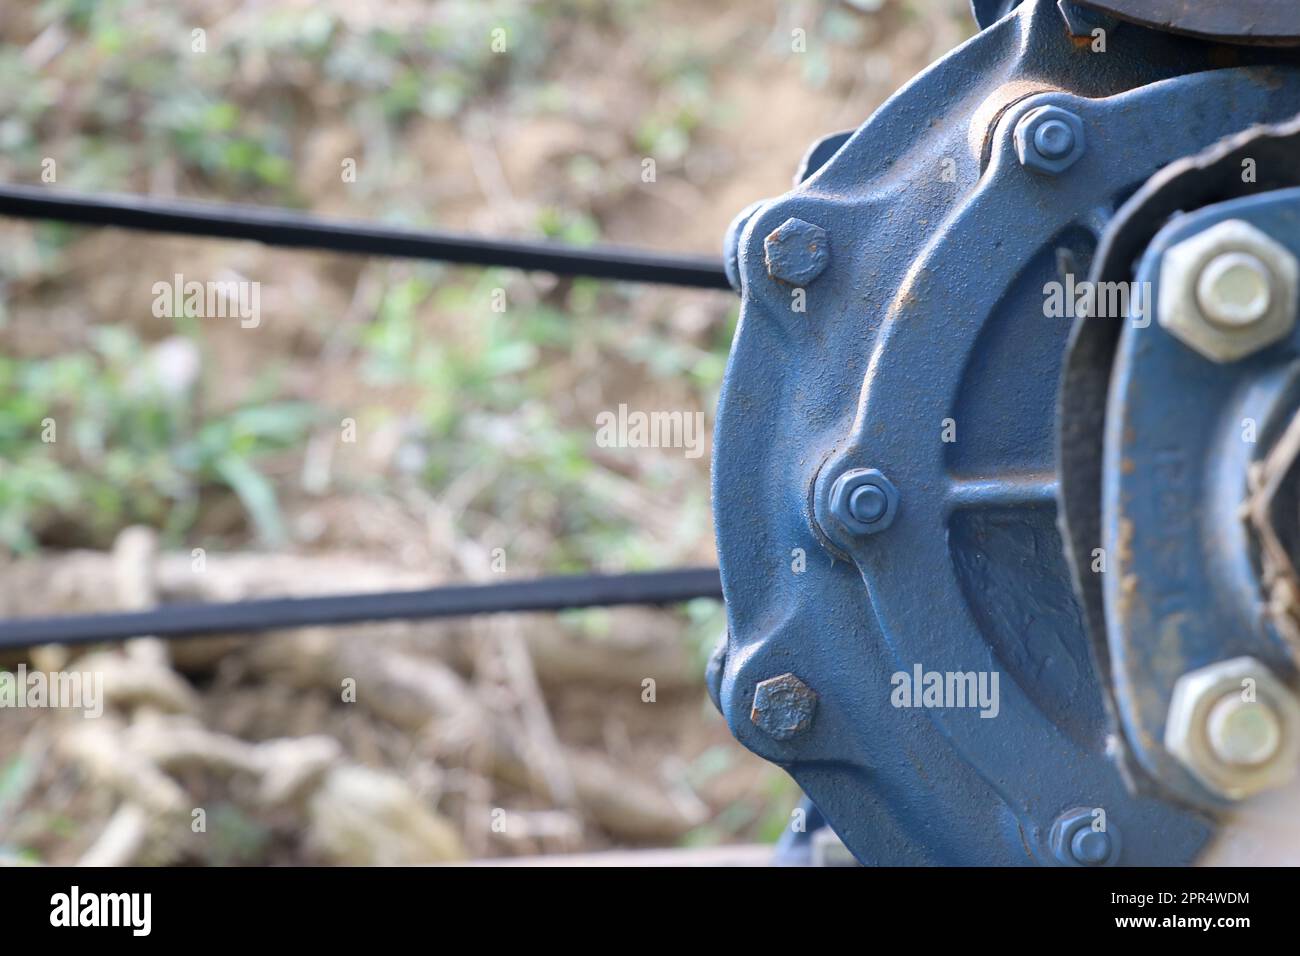 Vue latérale de la pompe centrifuge en fonte utilisant un système à courroie pour la transmission de puissance sur une pompe à eau d'irrigation agricole Banque D'Images